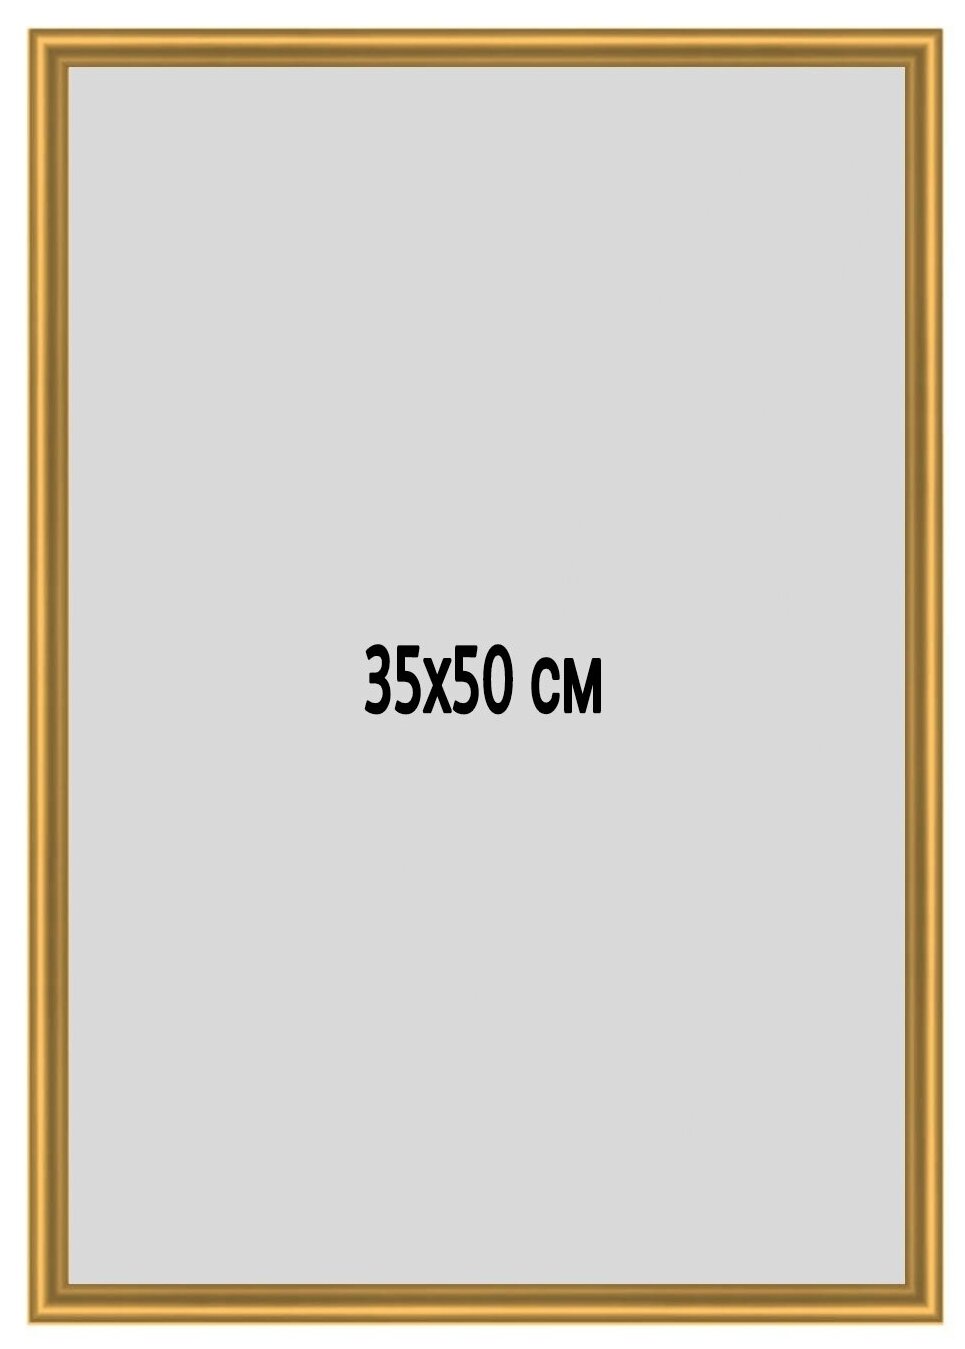 Фоторамка металлическая (алюминиевая) золотистая, для постера, фотографии, картины 35х50 см. Рамка для зеркала. Подарок девушке и мужчине.